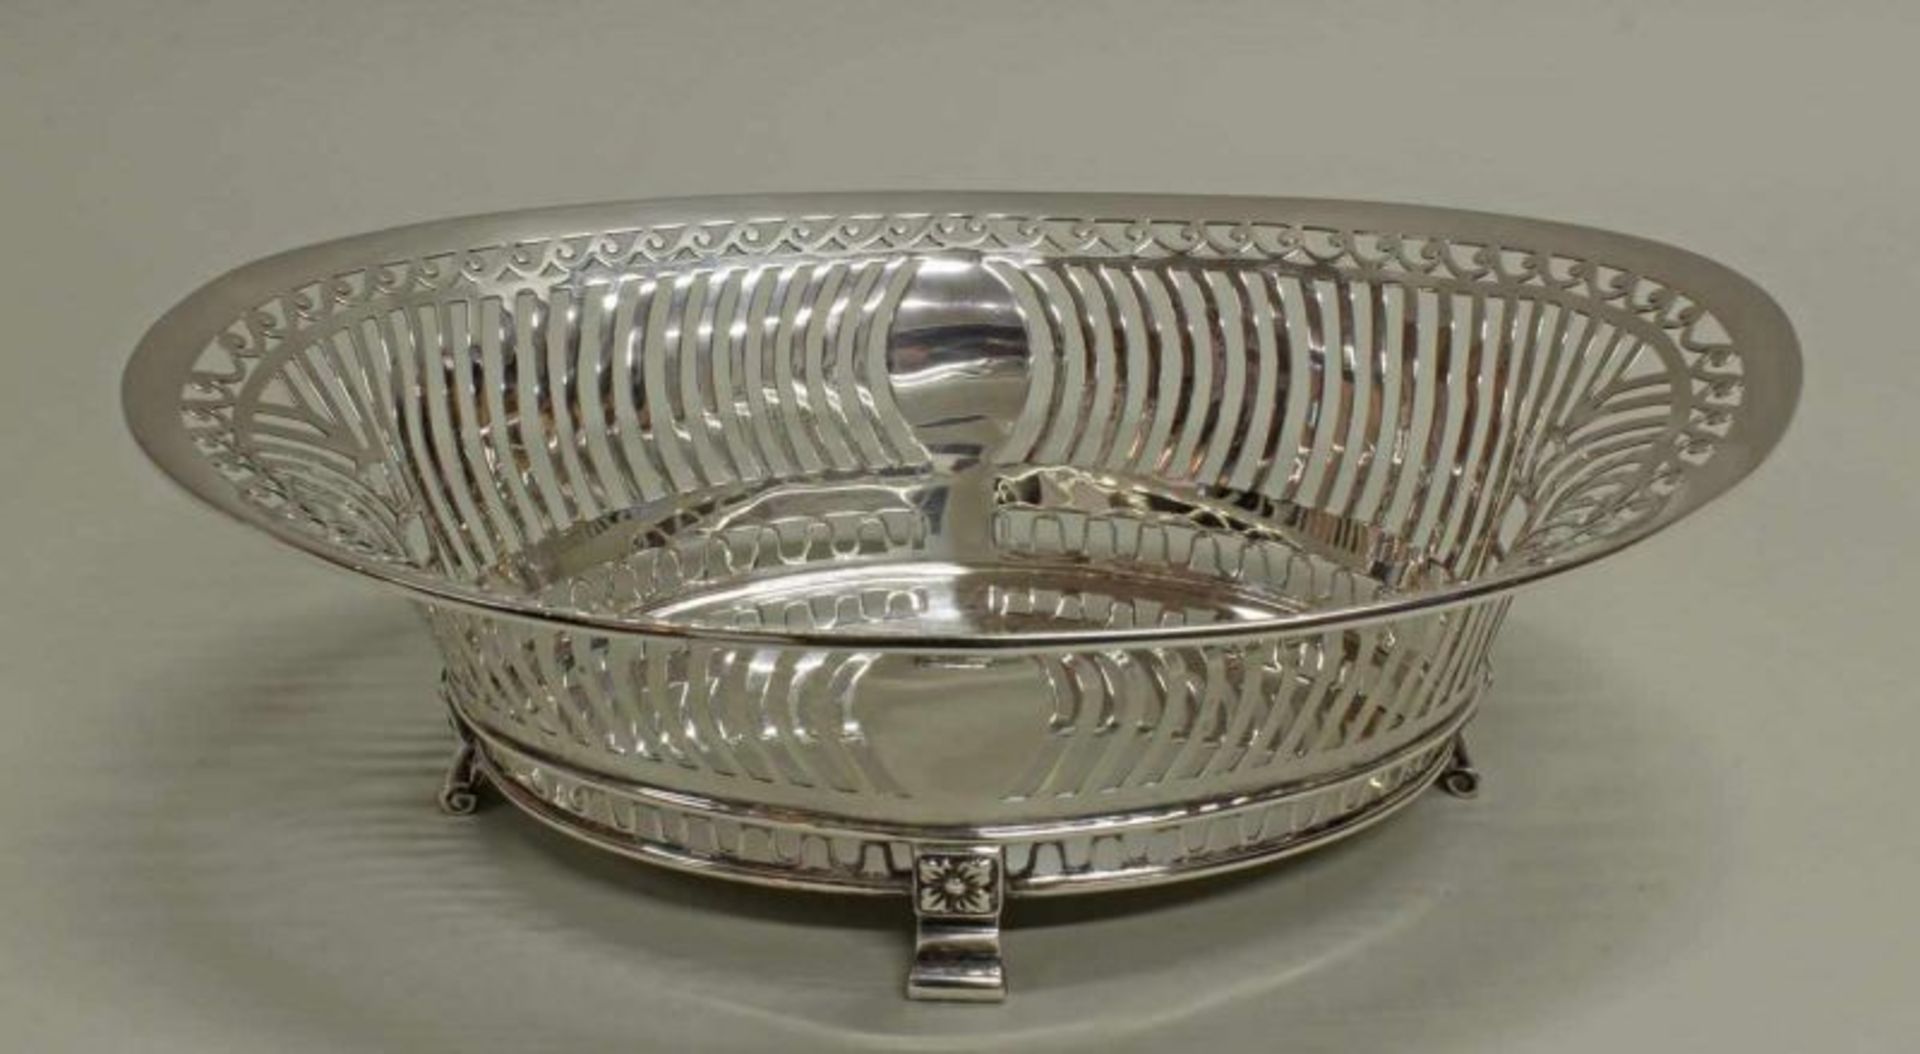 Korbschale, Silber 925, London, 1910, William Hutton & Sons, oval, à jour gearbeitet, auf vier